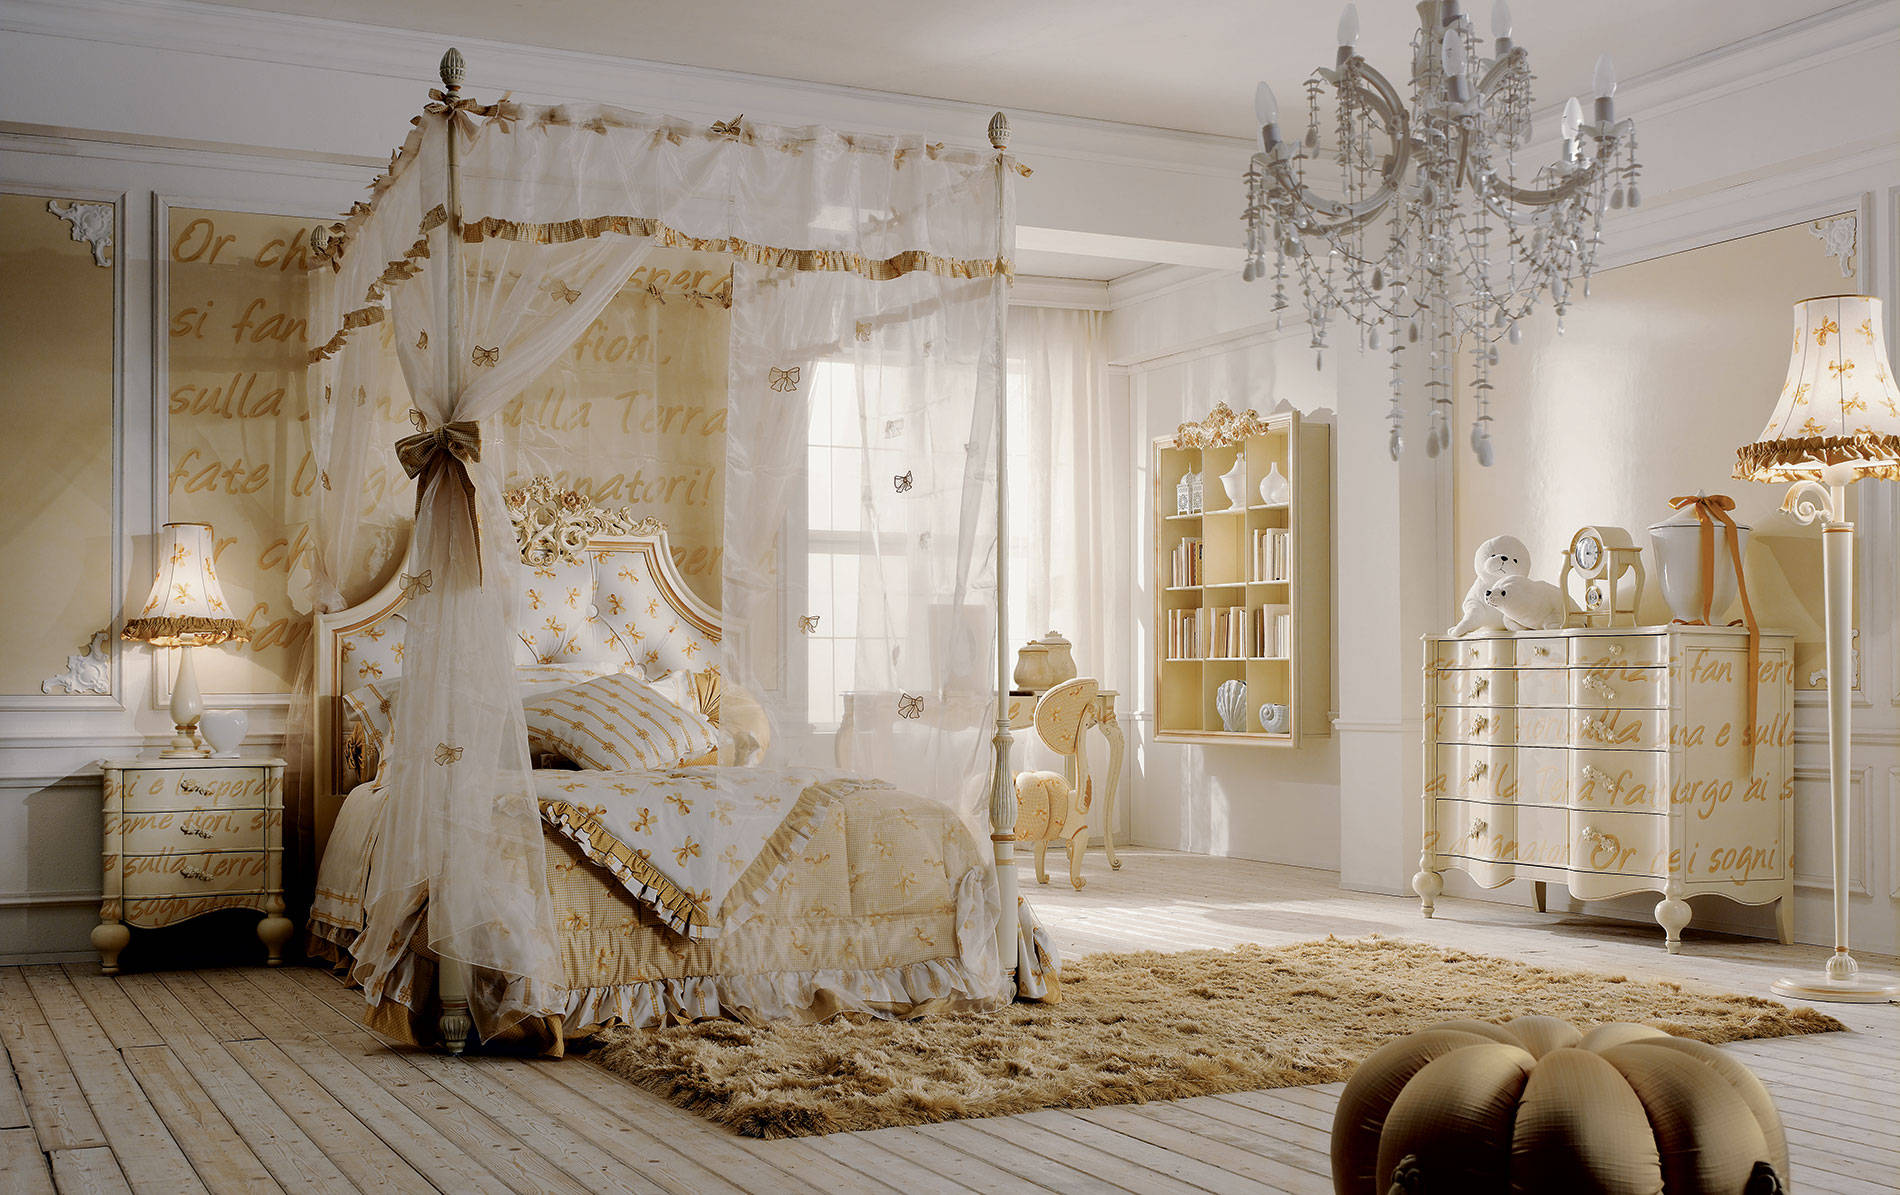 莱昂诺尔公主房间图片